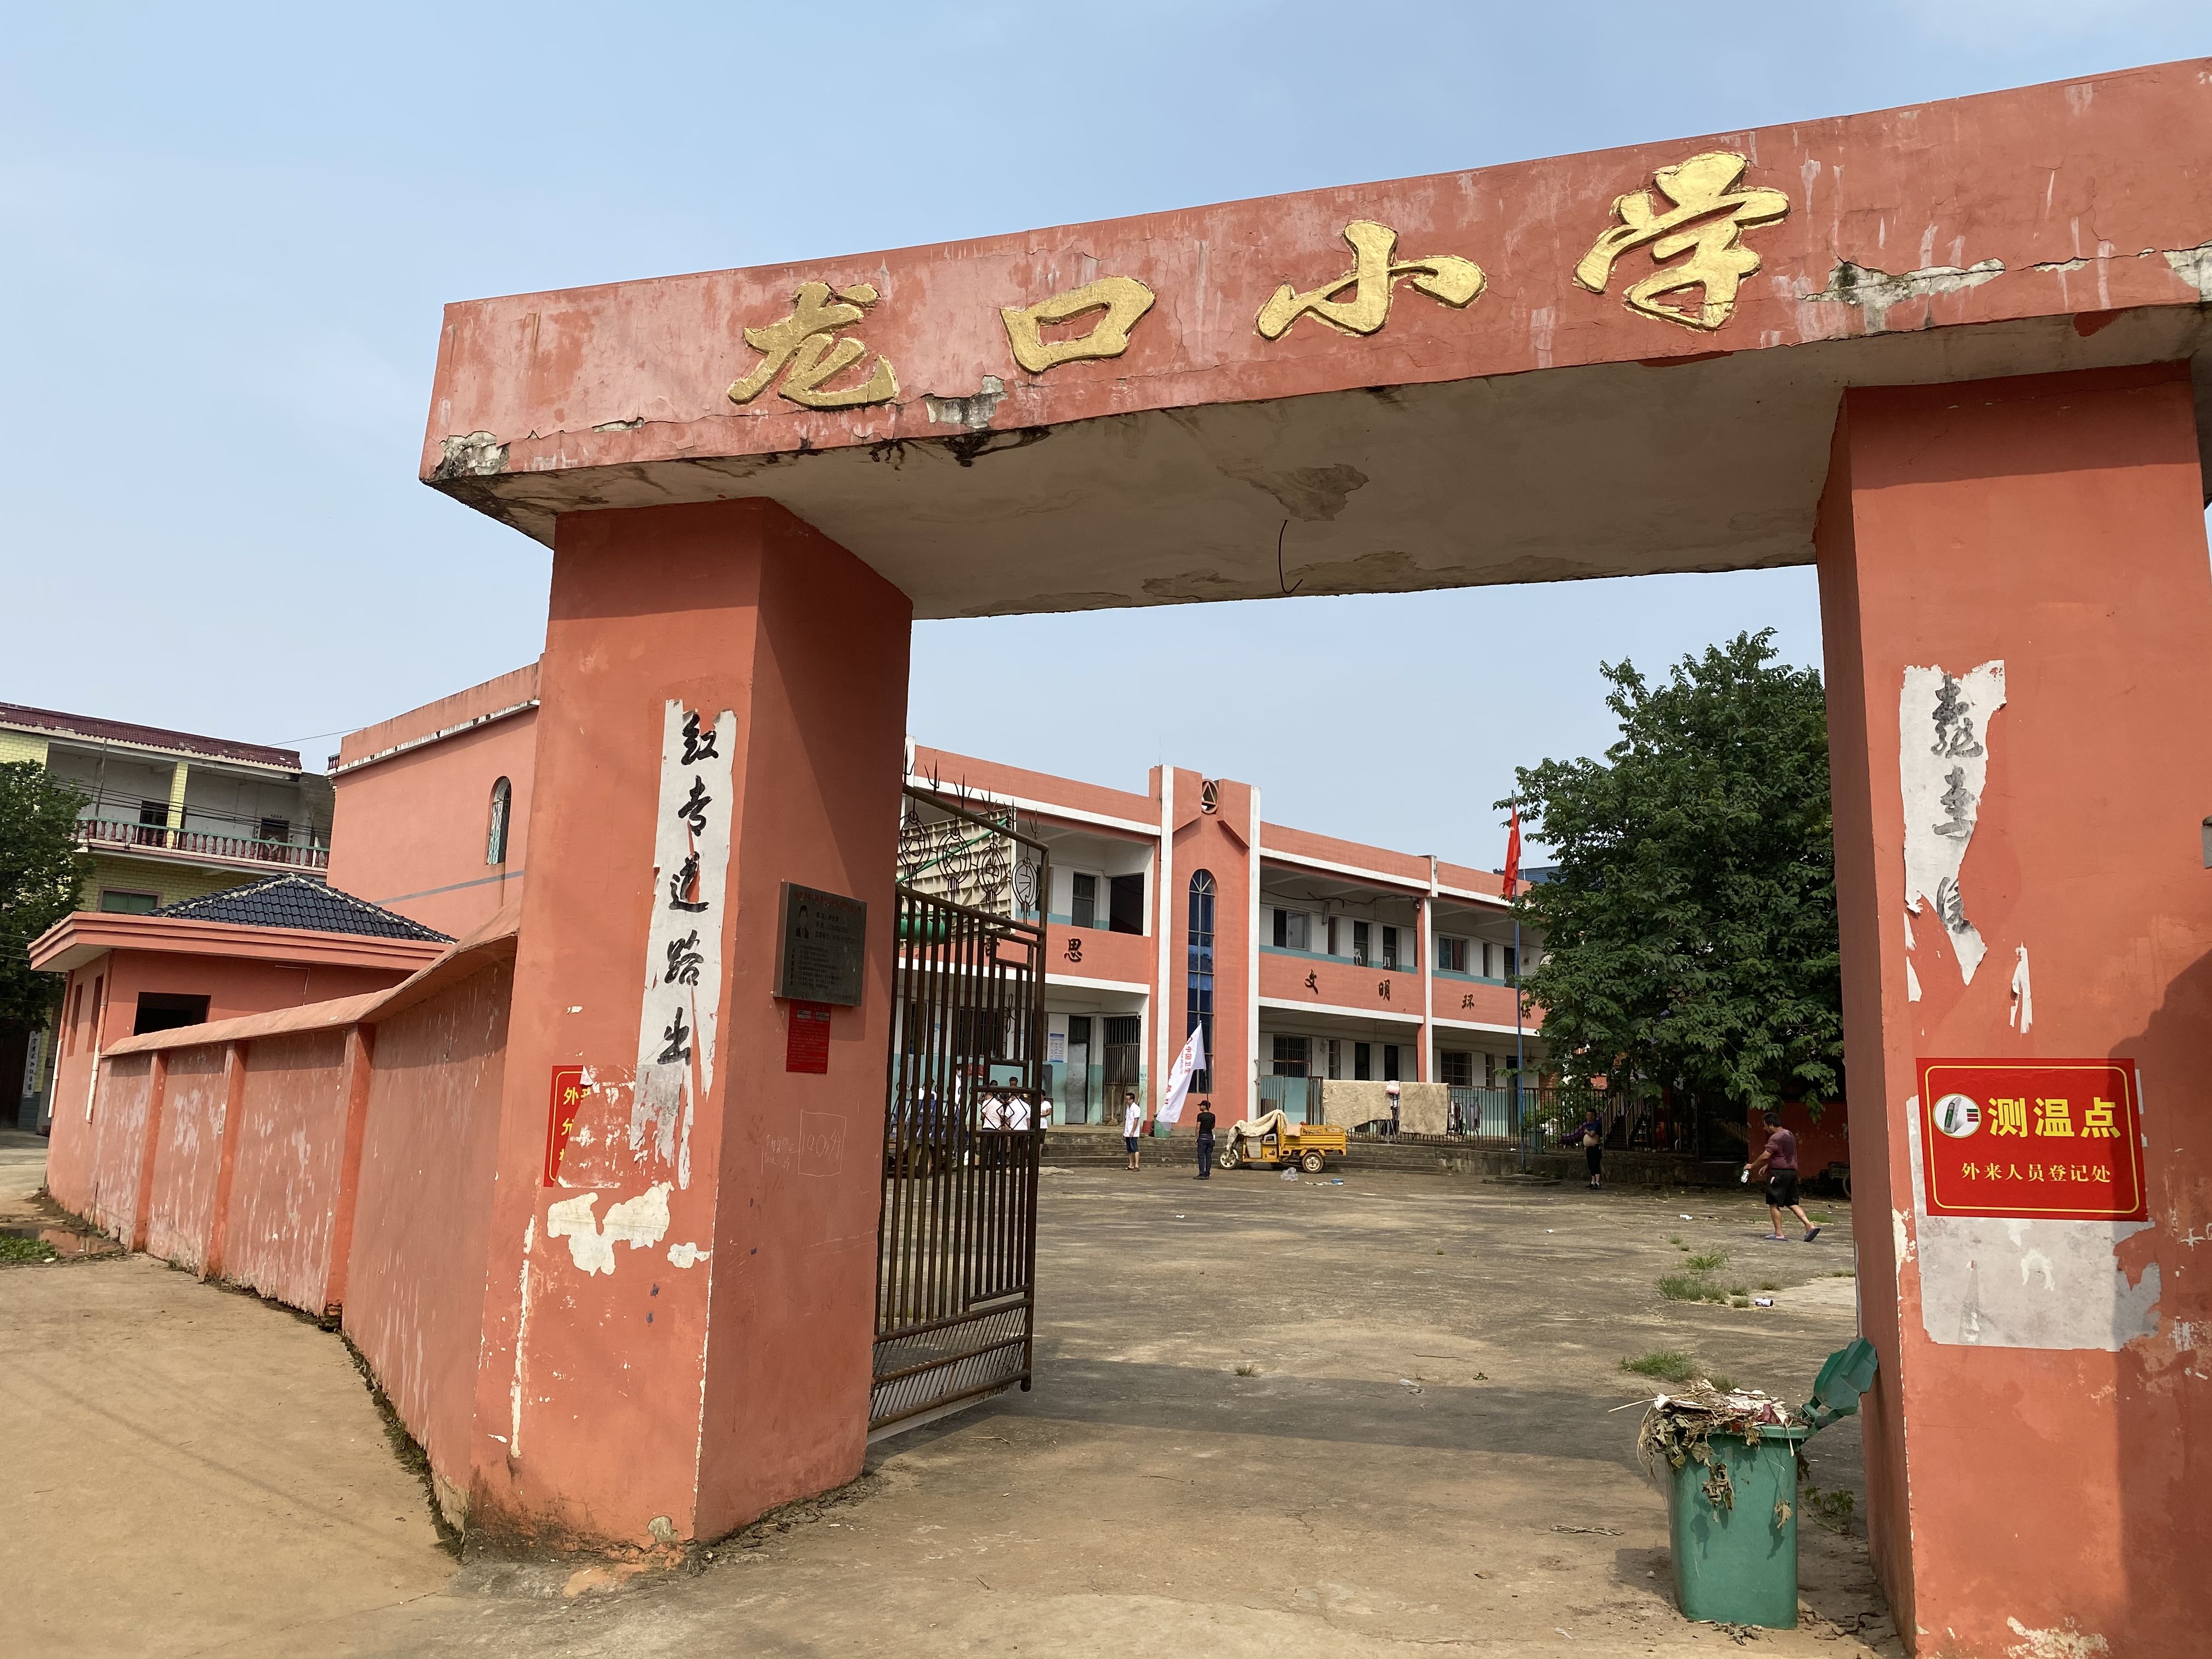 龙口村有5户村民共计30余人暂时安置在龙口小学。新京报记者杜雯雯摄